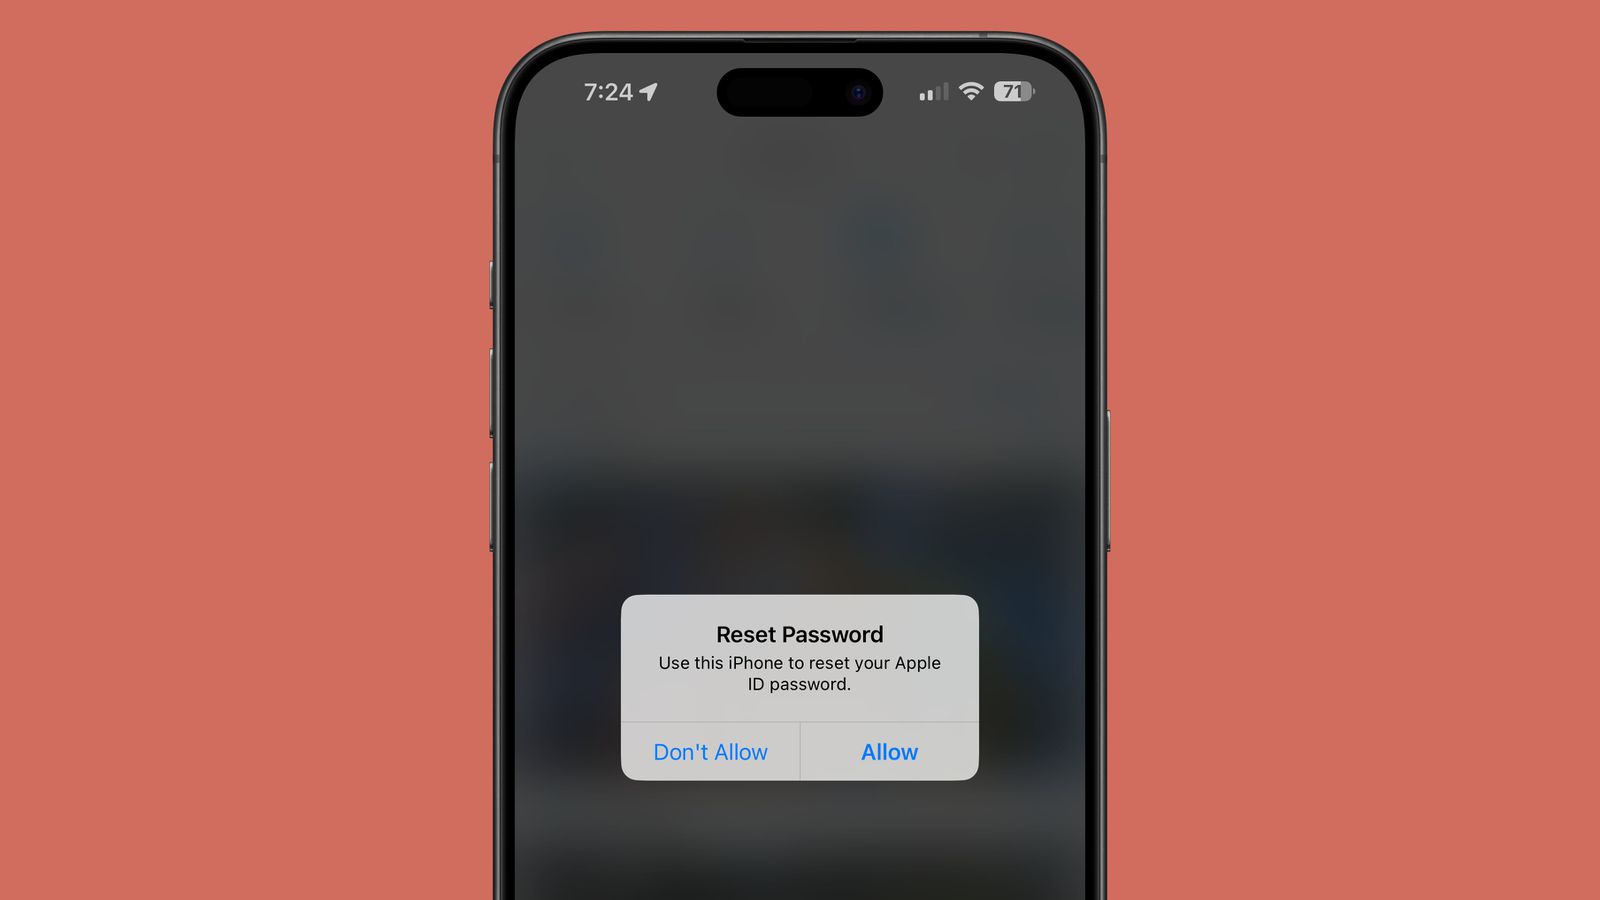 มิจฉาชีพจ้องจะเล่นคุณ ใช้วิธีส่งแจ้งเตือนหลอกให้เหยื่อรีเซ็ตรหัส Apple ID บน iPhone